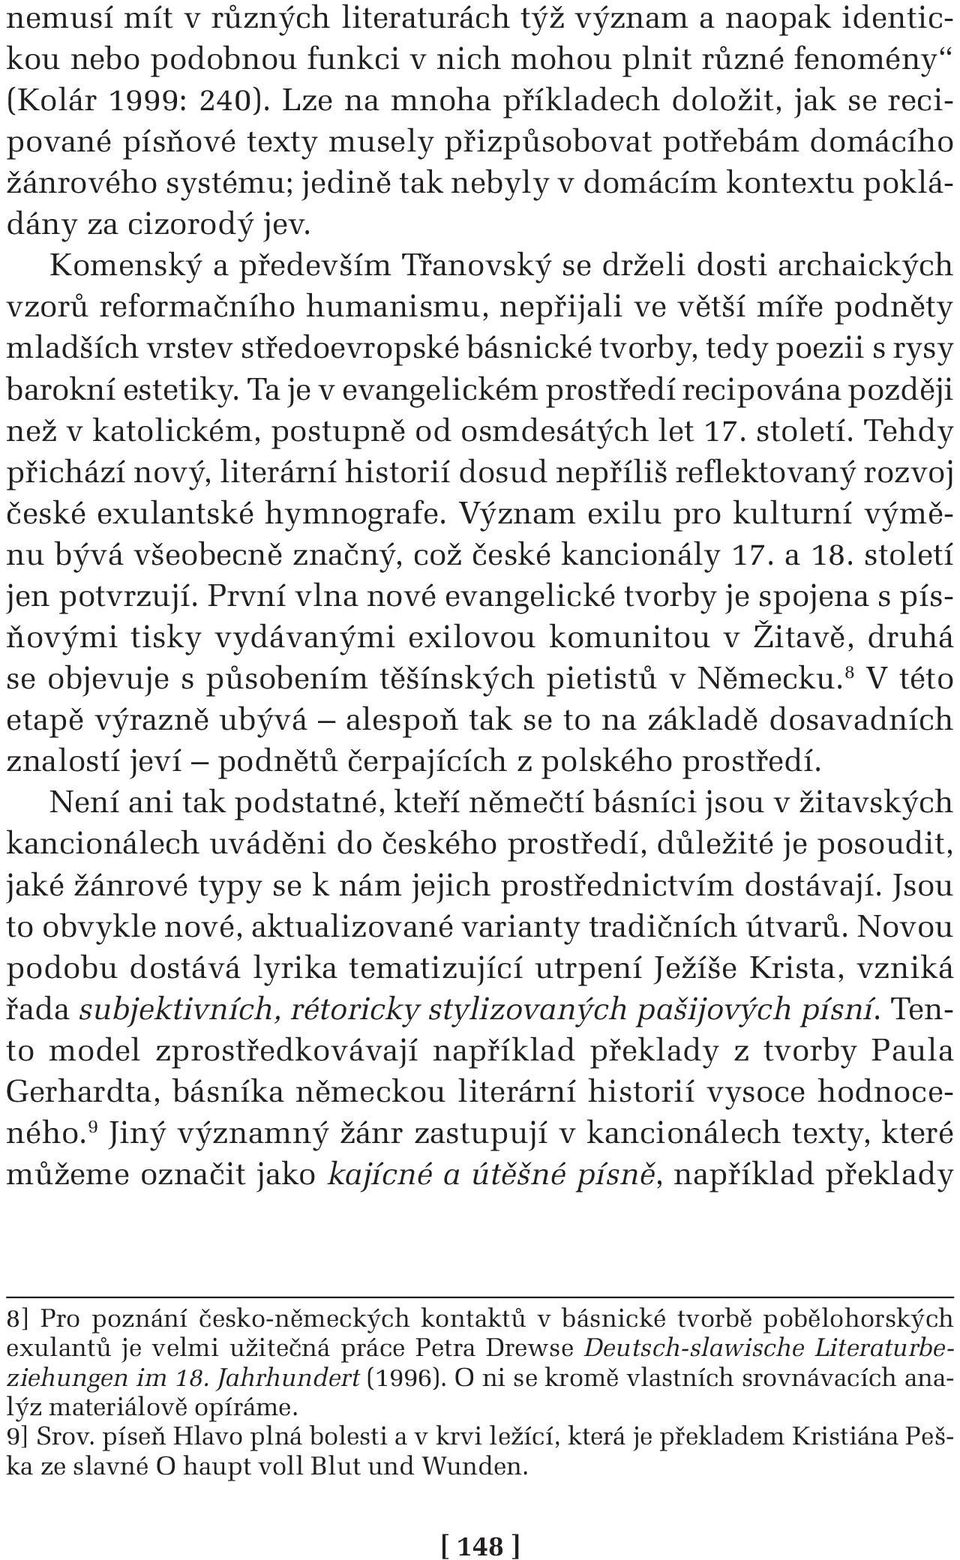 Komenský a především Třanovský se drželi dosti archaických vzorů reformačního humanismu, nepřijali ve větší míře podněty mladších vrstev středoevropské básnické tvorby, tedy poezii s rysy barokní